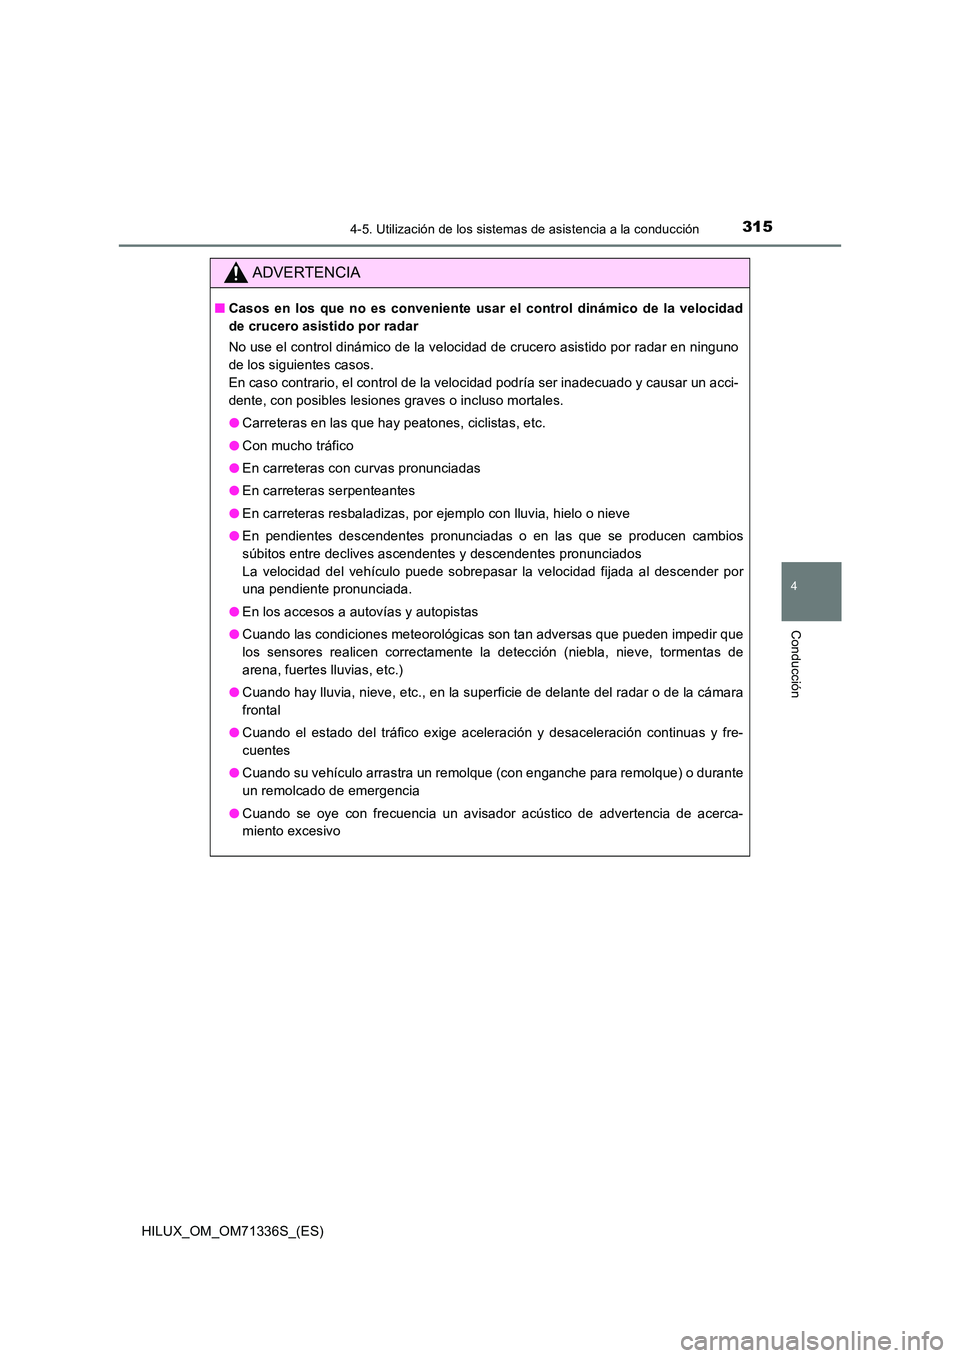 TOYOTA HILUX 2021  Manuale de Empleo (in Spanish) 3154-5. Utilización de los sistemas de asistencia a la conducción
4
Conducción
HILUX_OM_OM71336S_(ES)
ADVERTENCIA
�QCasos en los que no es conveniente usar el control dinámico de la velocidad 
de 